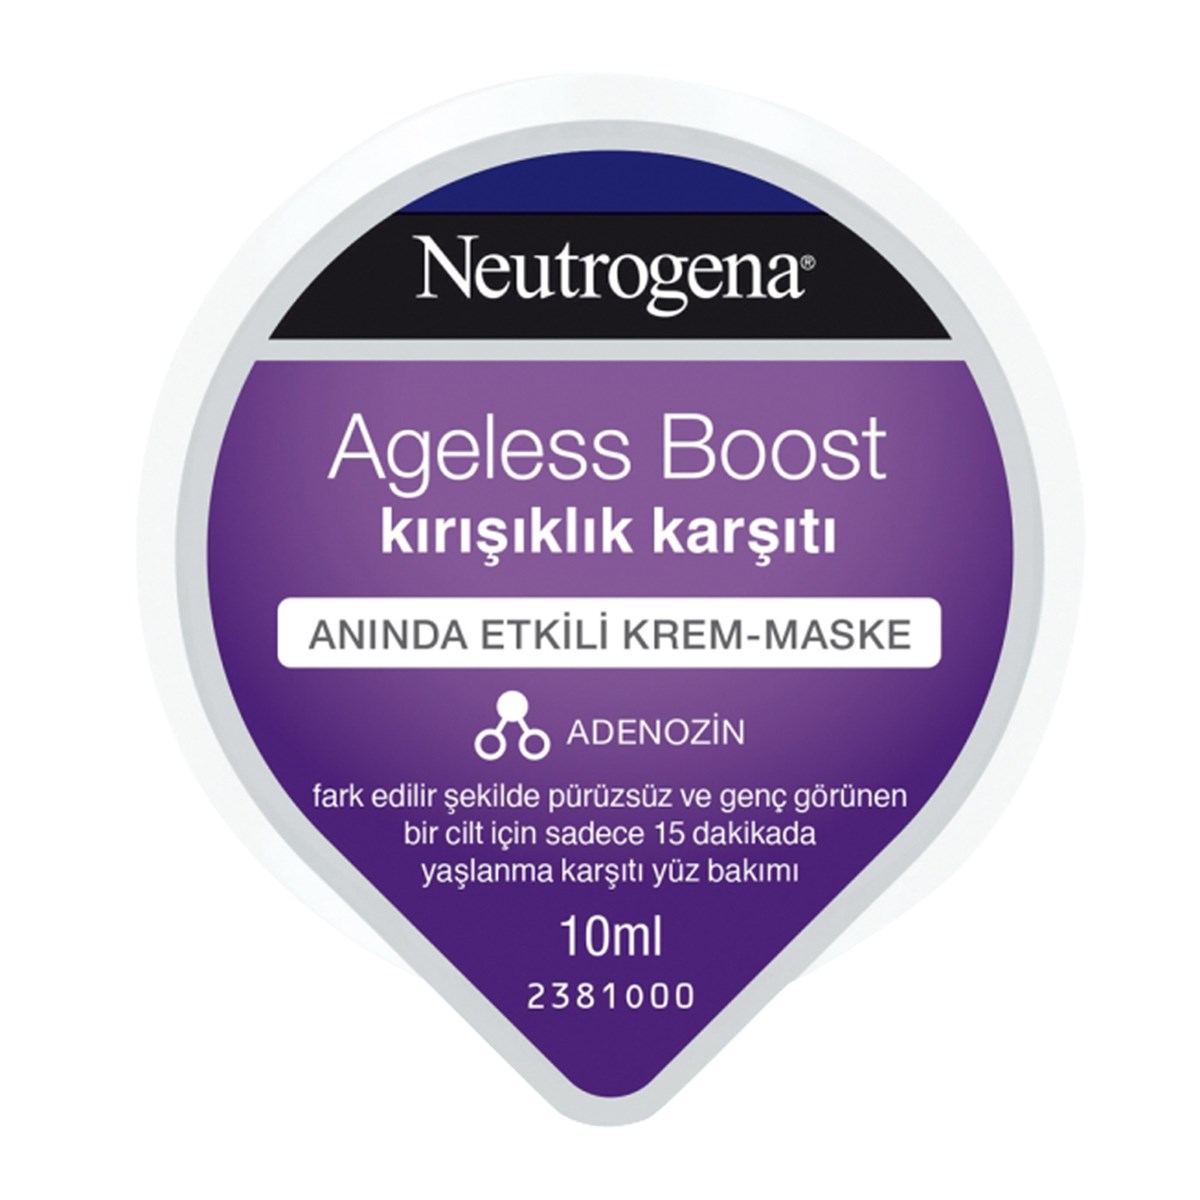 Neutrogena Ageless Boost Kırışıklık Karşıtı Anında Etkili Krem-Maske 10ml -  Platin